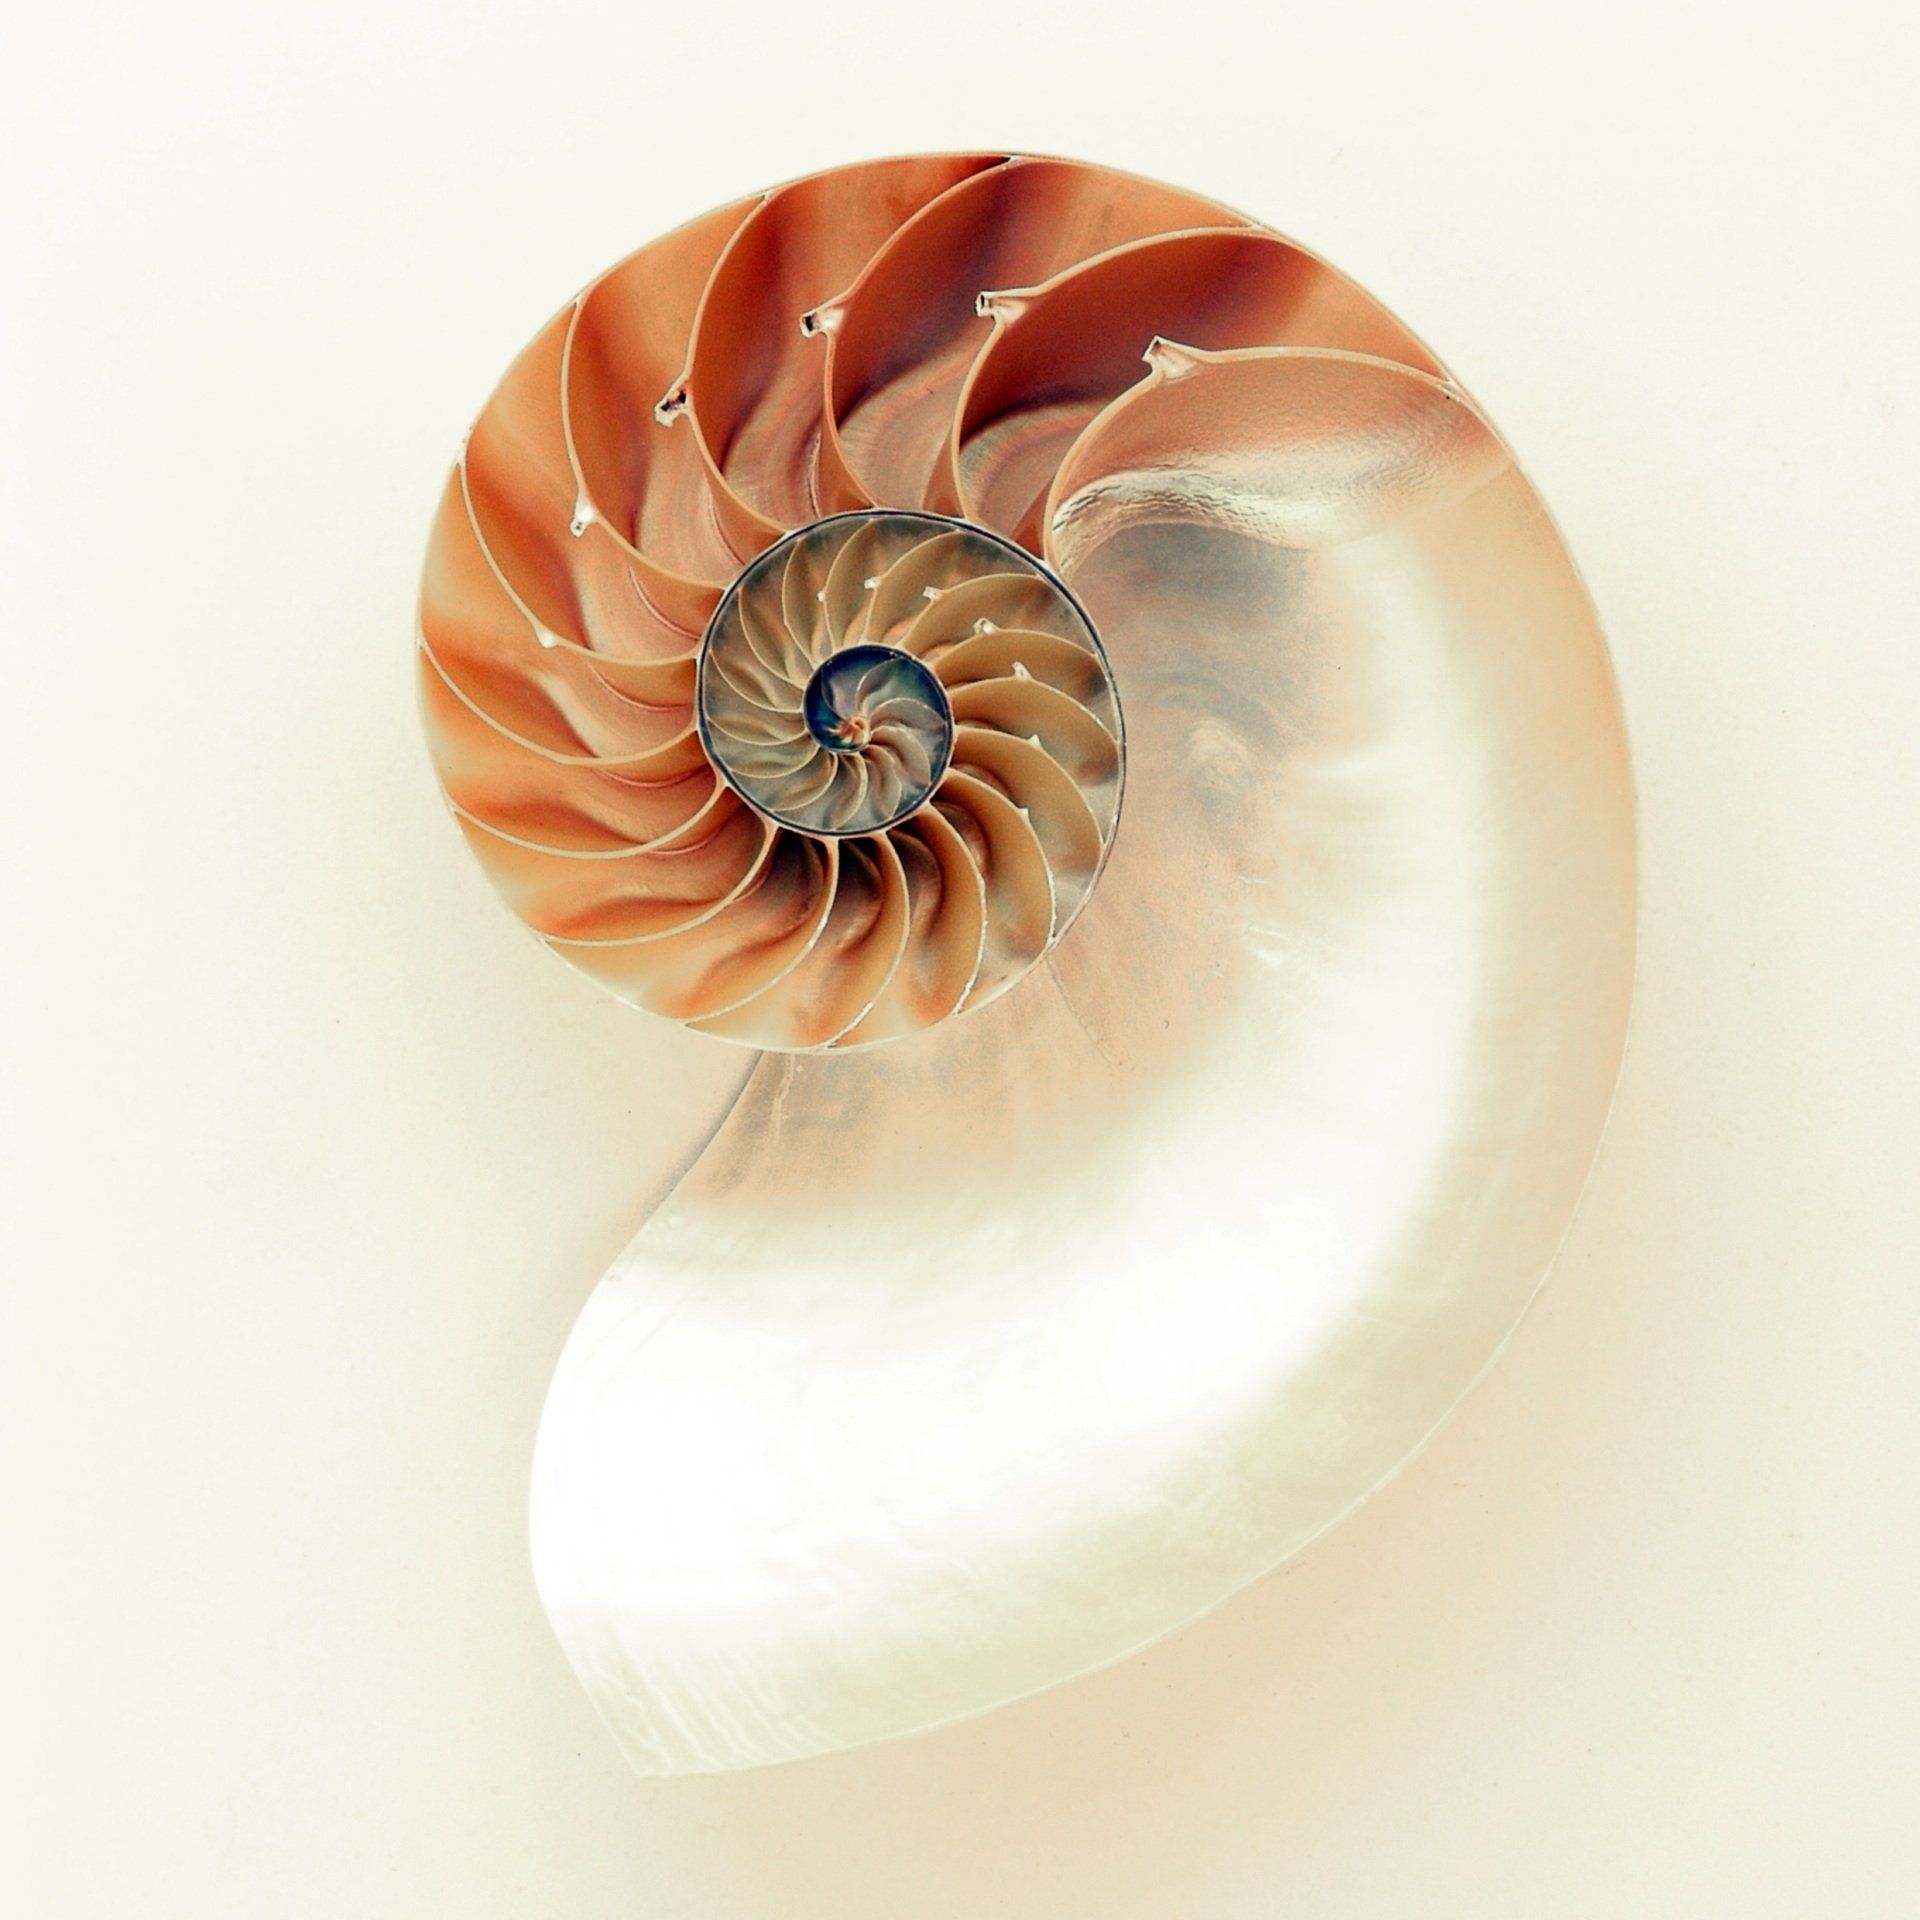 Een close up van een spiraalvormige schelp op een witte achtergrond